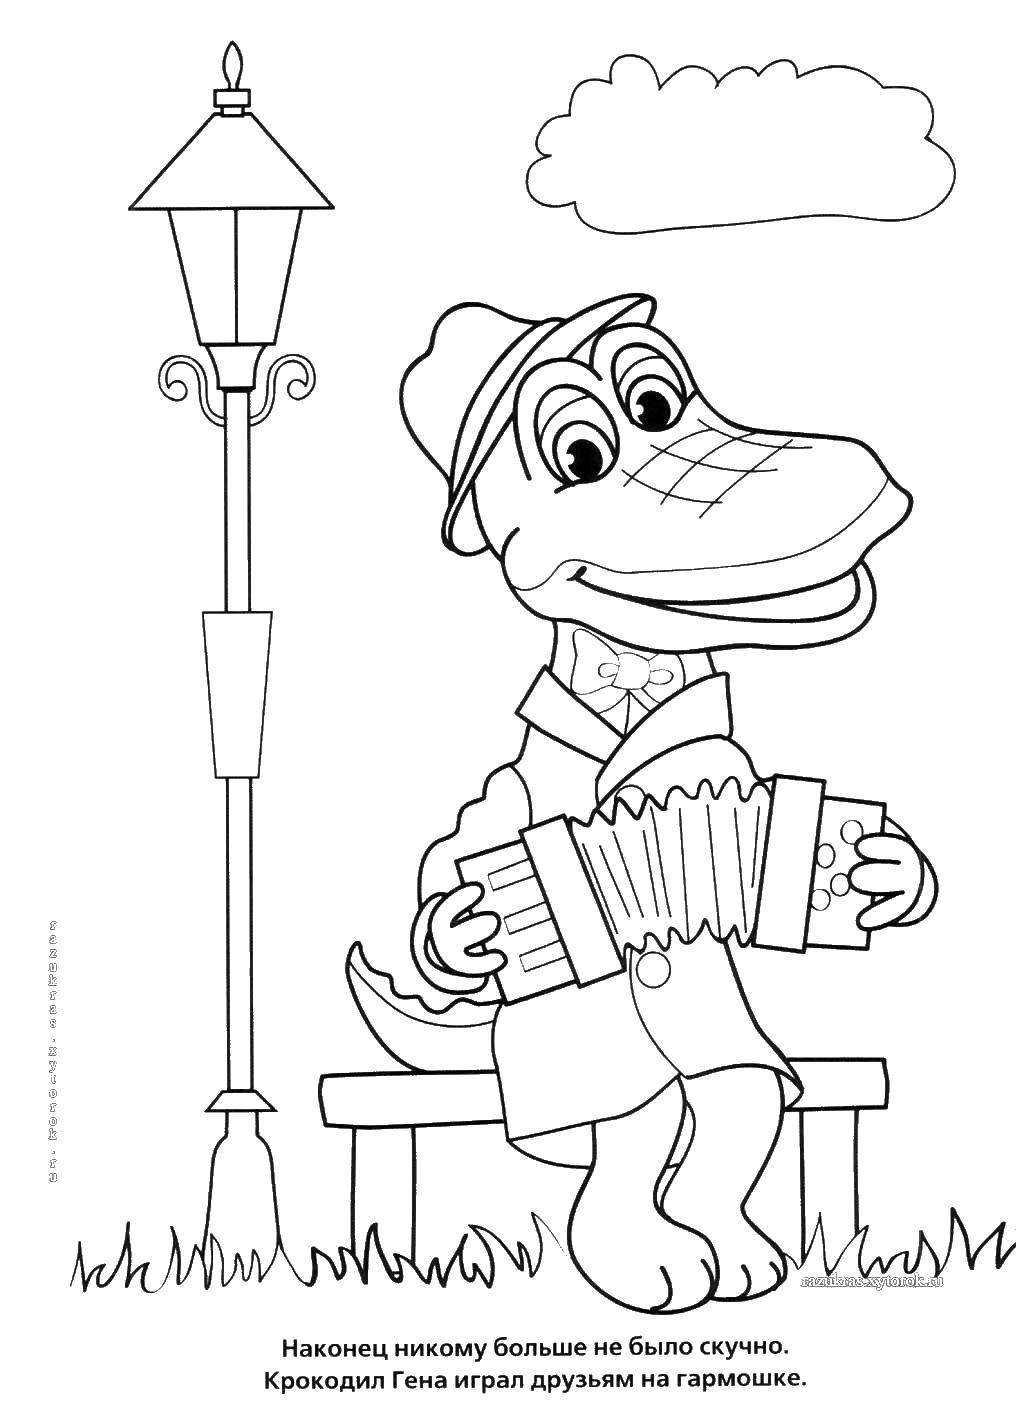 Coloring Crocodile Gena. Category Cartoon character. Tags:  Cartoon character, Cheburashka and Crocodile Gena.